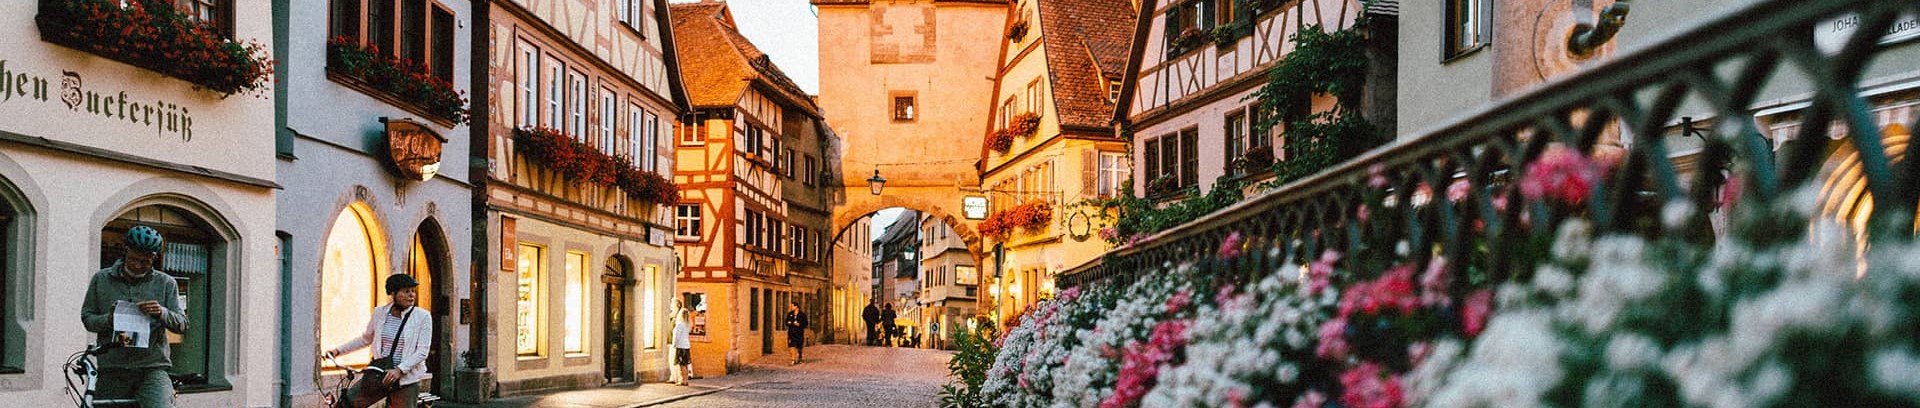 Billede af en mindre tysk by